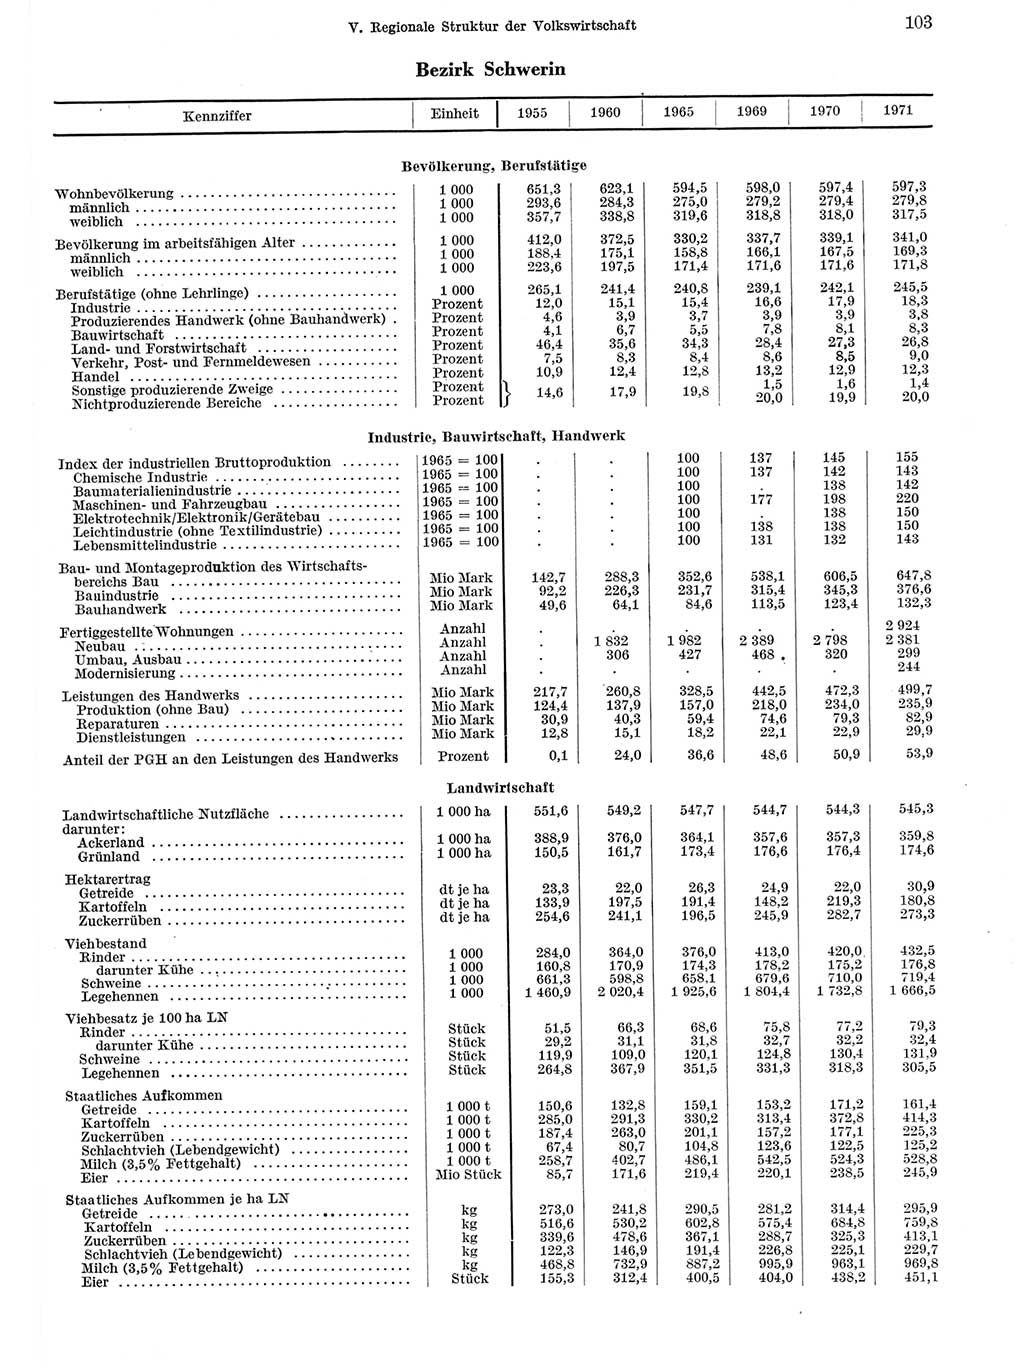 Statistisches Jahrbuch der Deutschen Demokratischen Republik (DDR) 1972, Seite 103 (Stat. Jb. DDR 1972, S. 103)